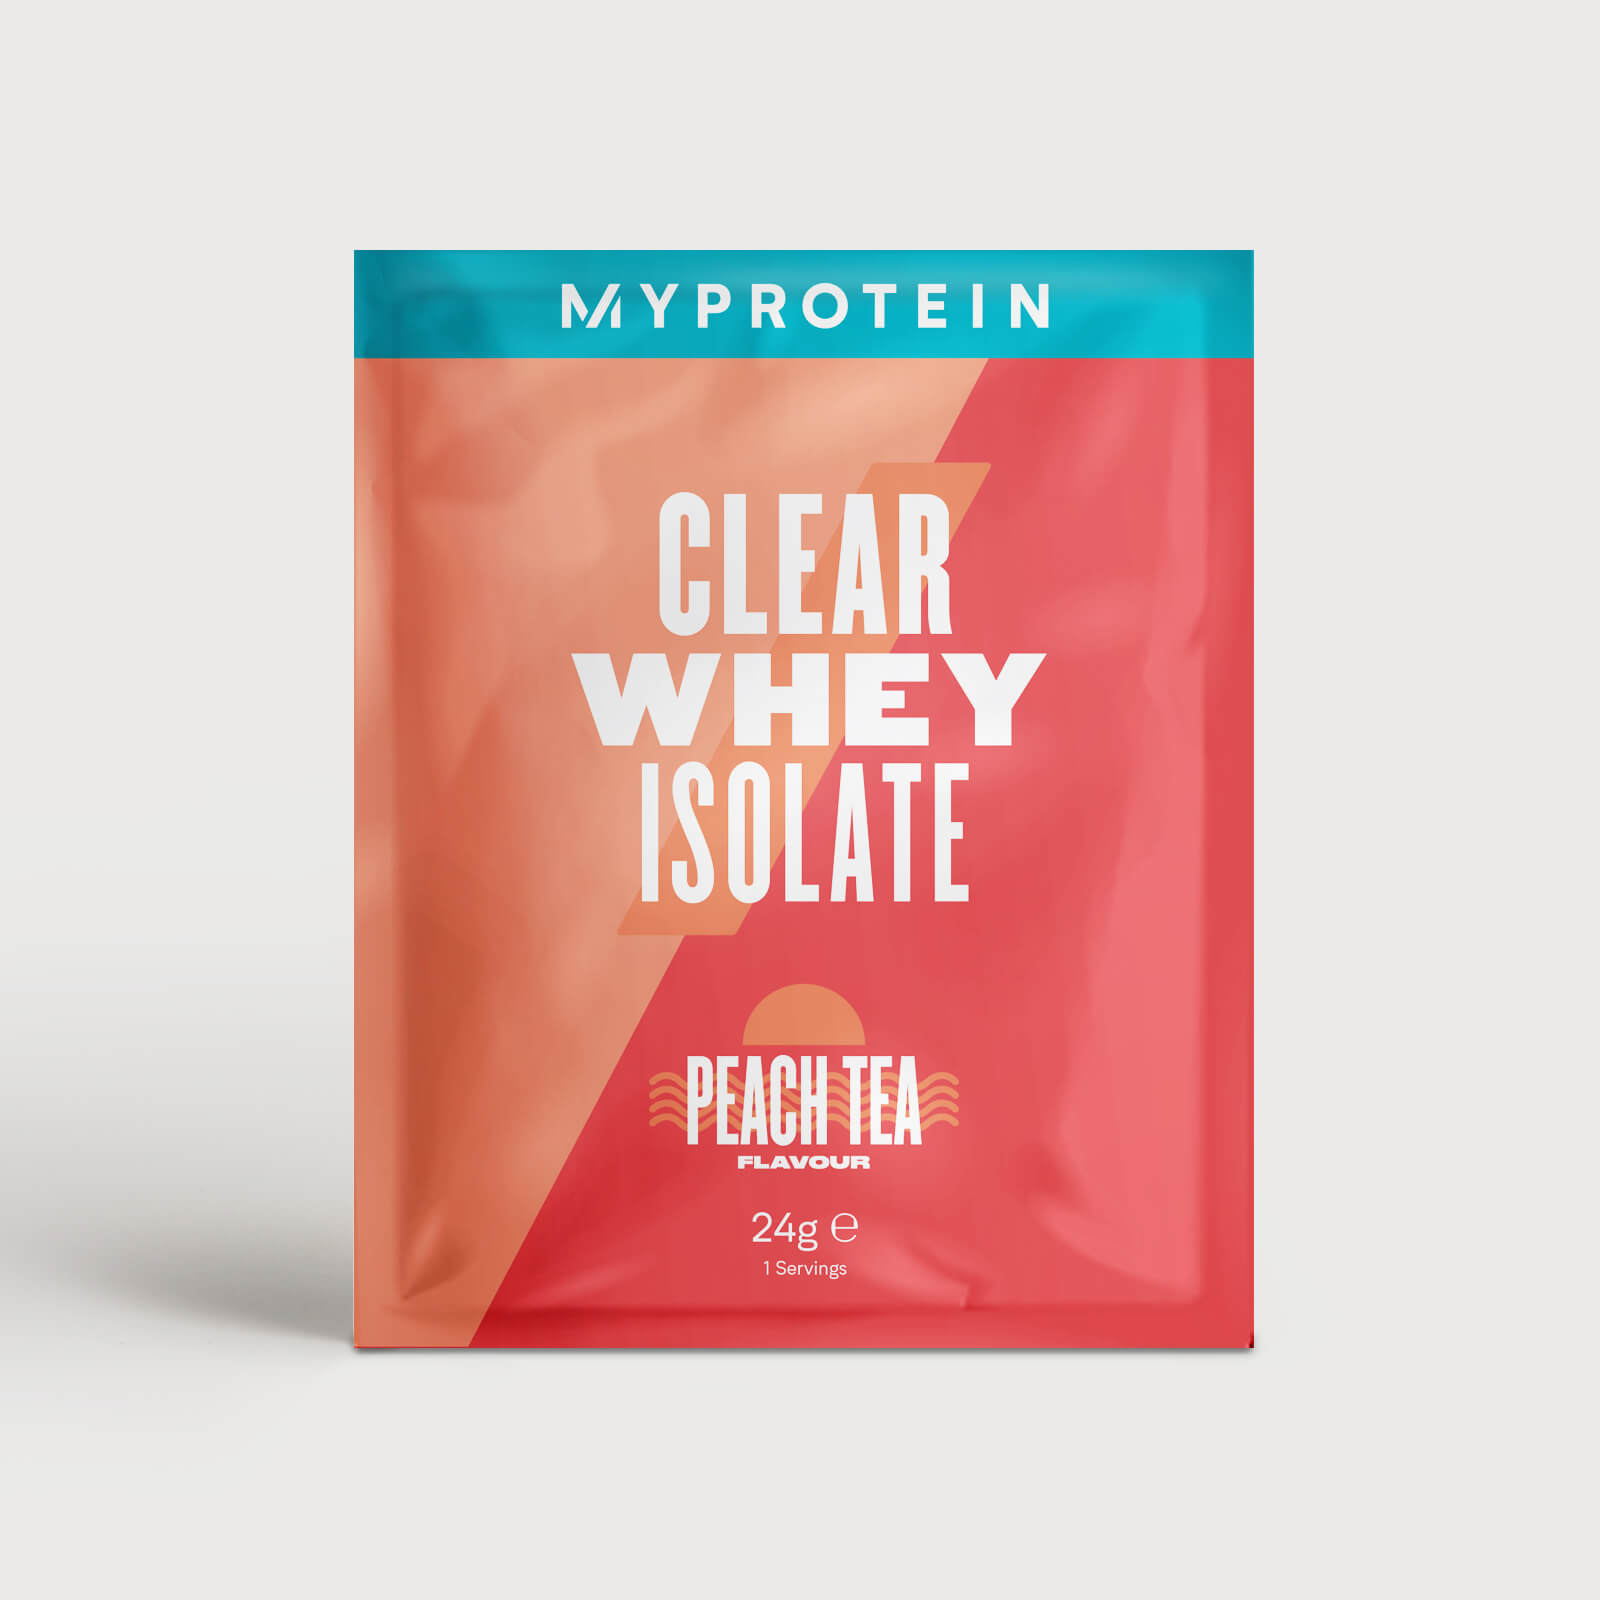 Myprotein Clear Whey Isolate (Sample) - 24g - Té de Melocotón